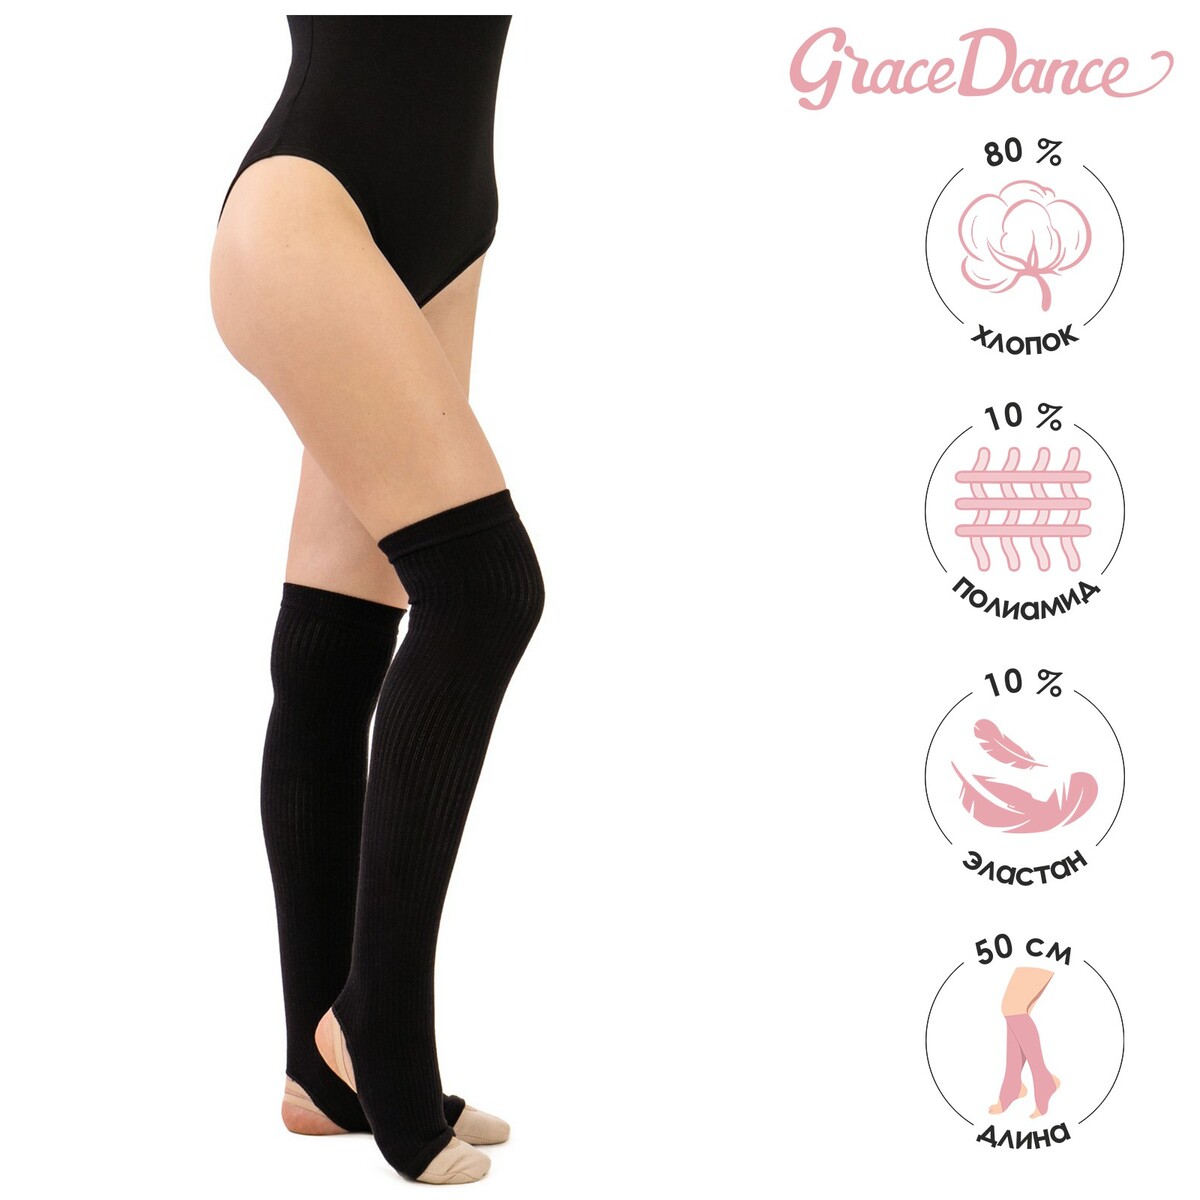 Гетры для танцев grace dance №3, на резинке, длина 50 см, цвет черный Grace Dance